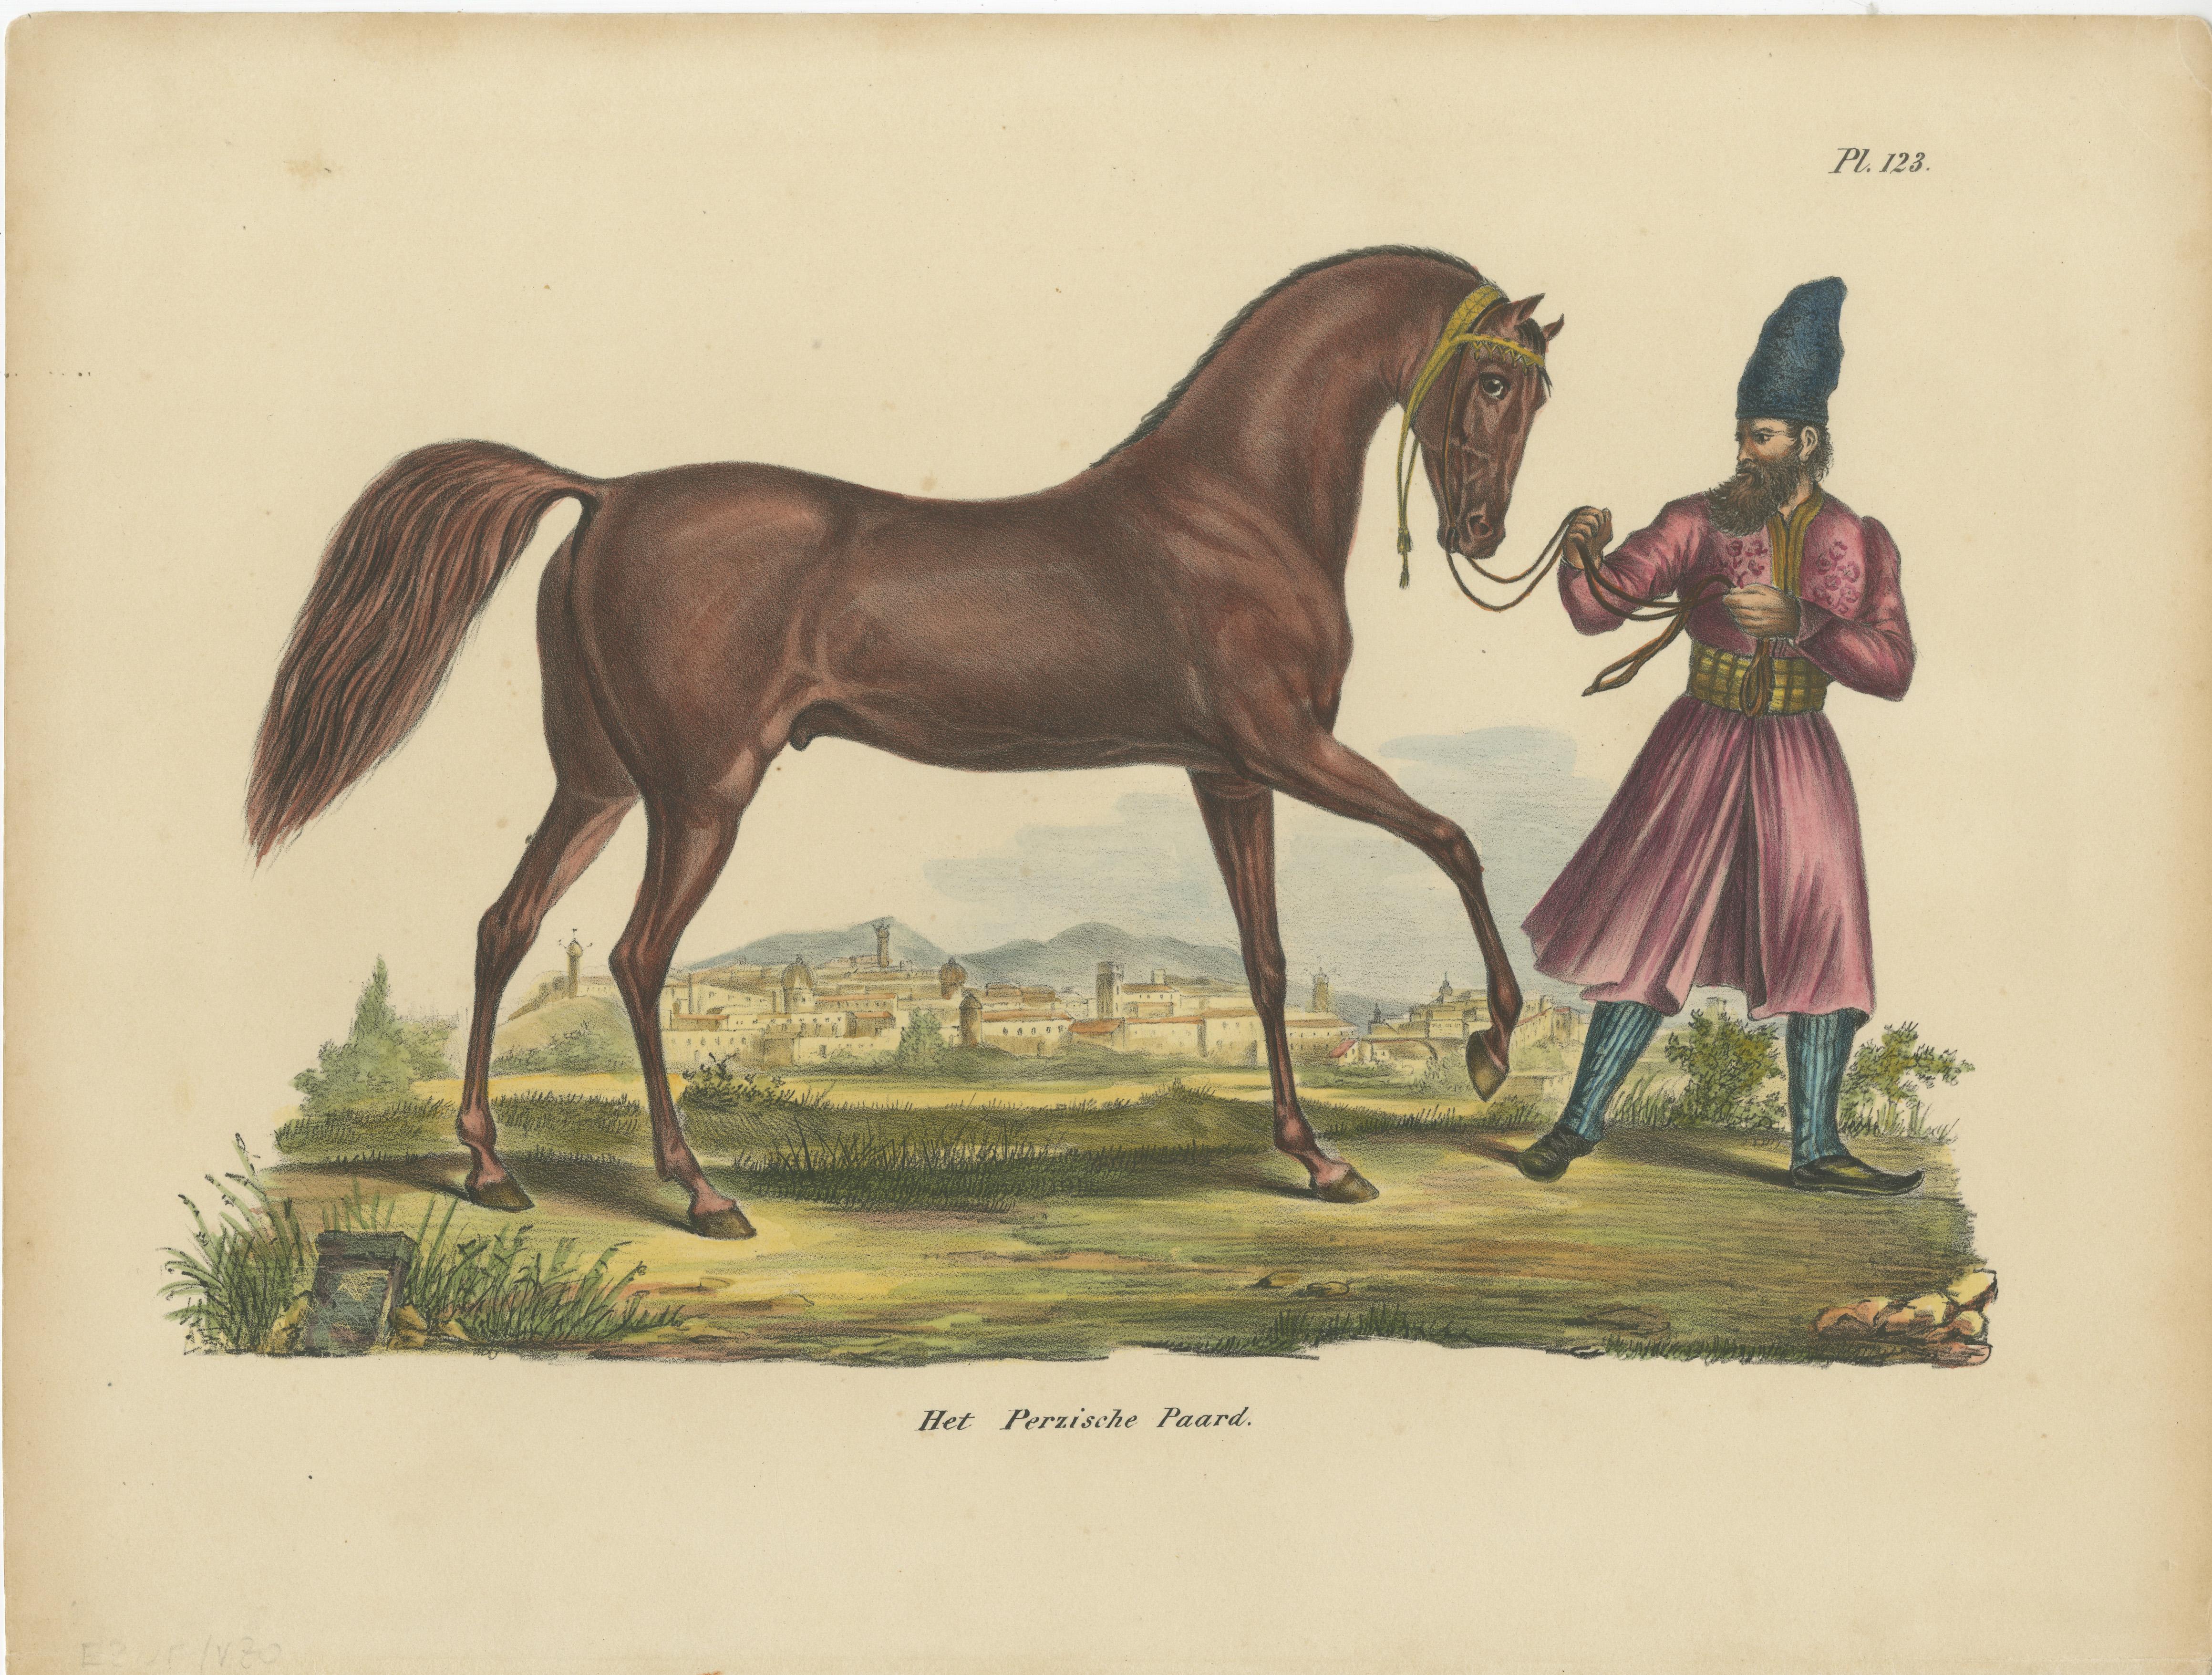 Antique print titled 'Het Perzische Paard'. Old hand colored print of a Persian horse. This print originates from 'Volledige natuurlijke historie der zoogdieren: volgens de nieuwste onderzoekingen en ontdekkingen' by Heinrich Schinz. Published by